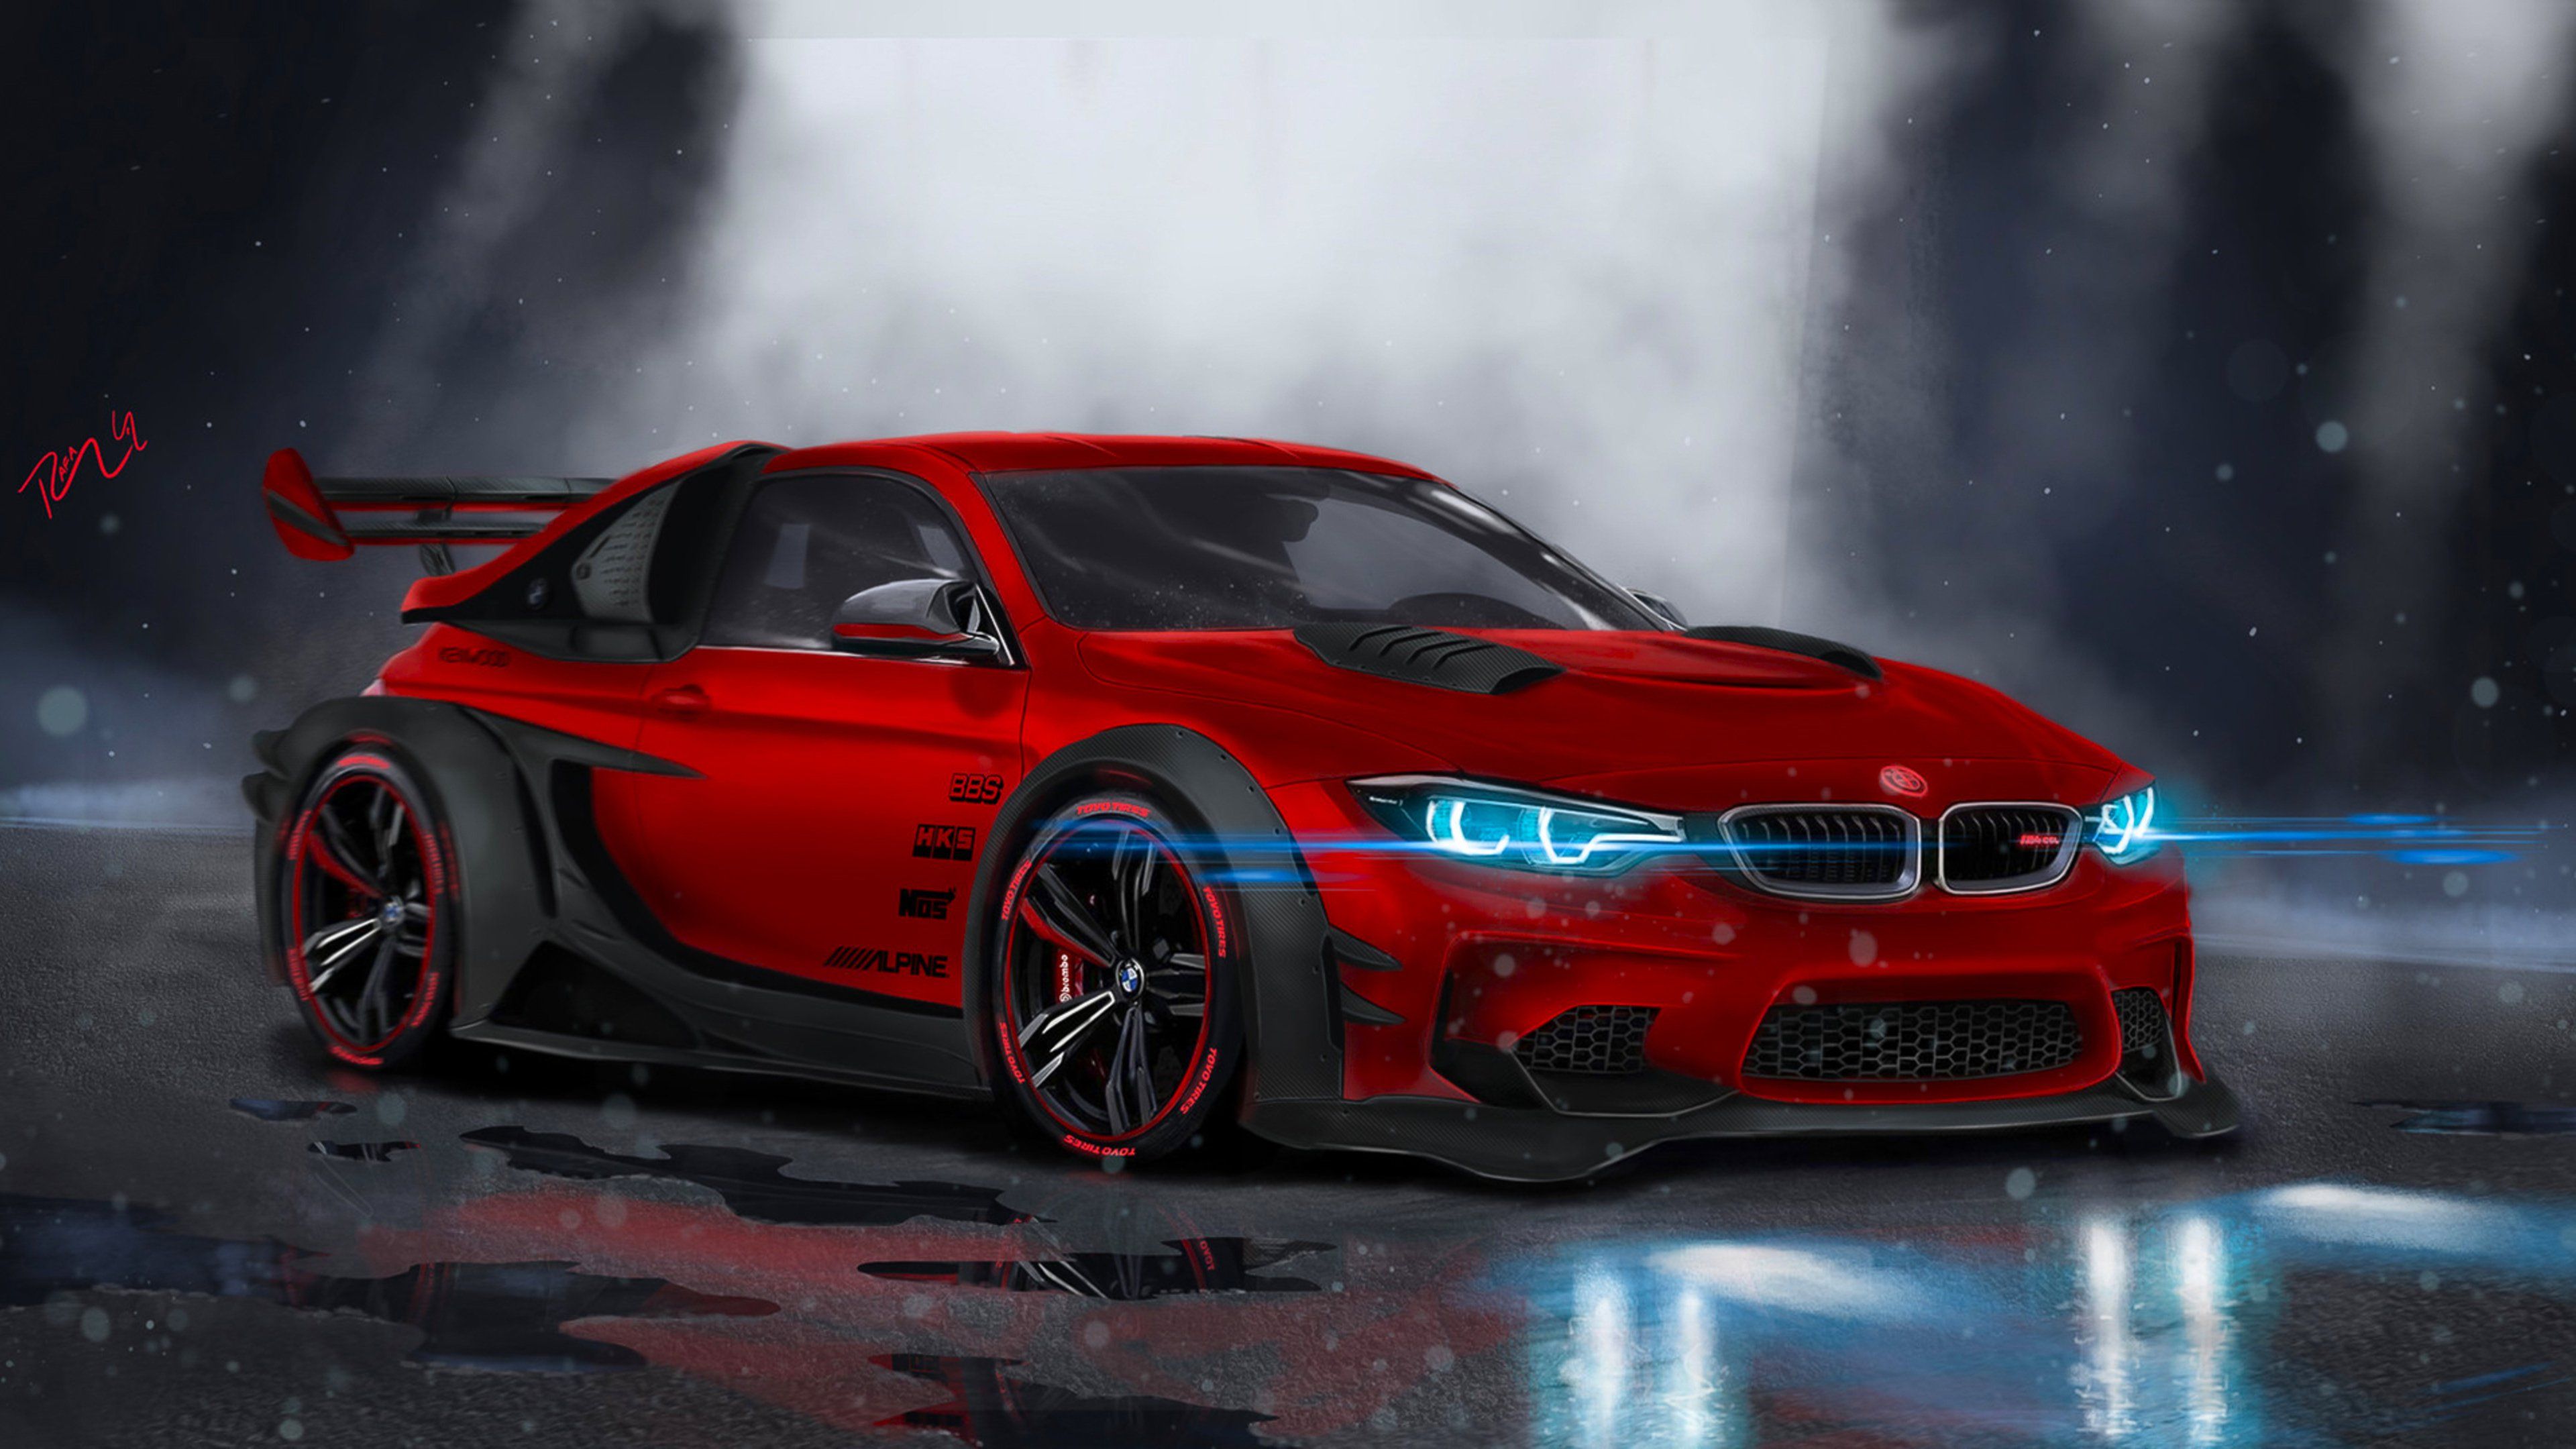 BMW M4 altamente modificado, HD Cars, fondos de pantalla 4k, imágenes, fondos